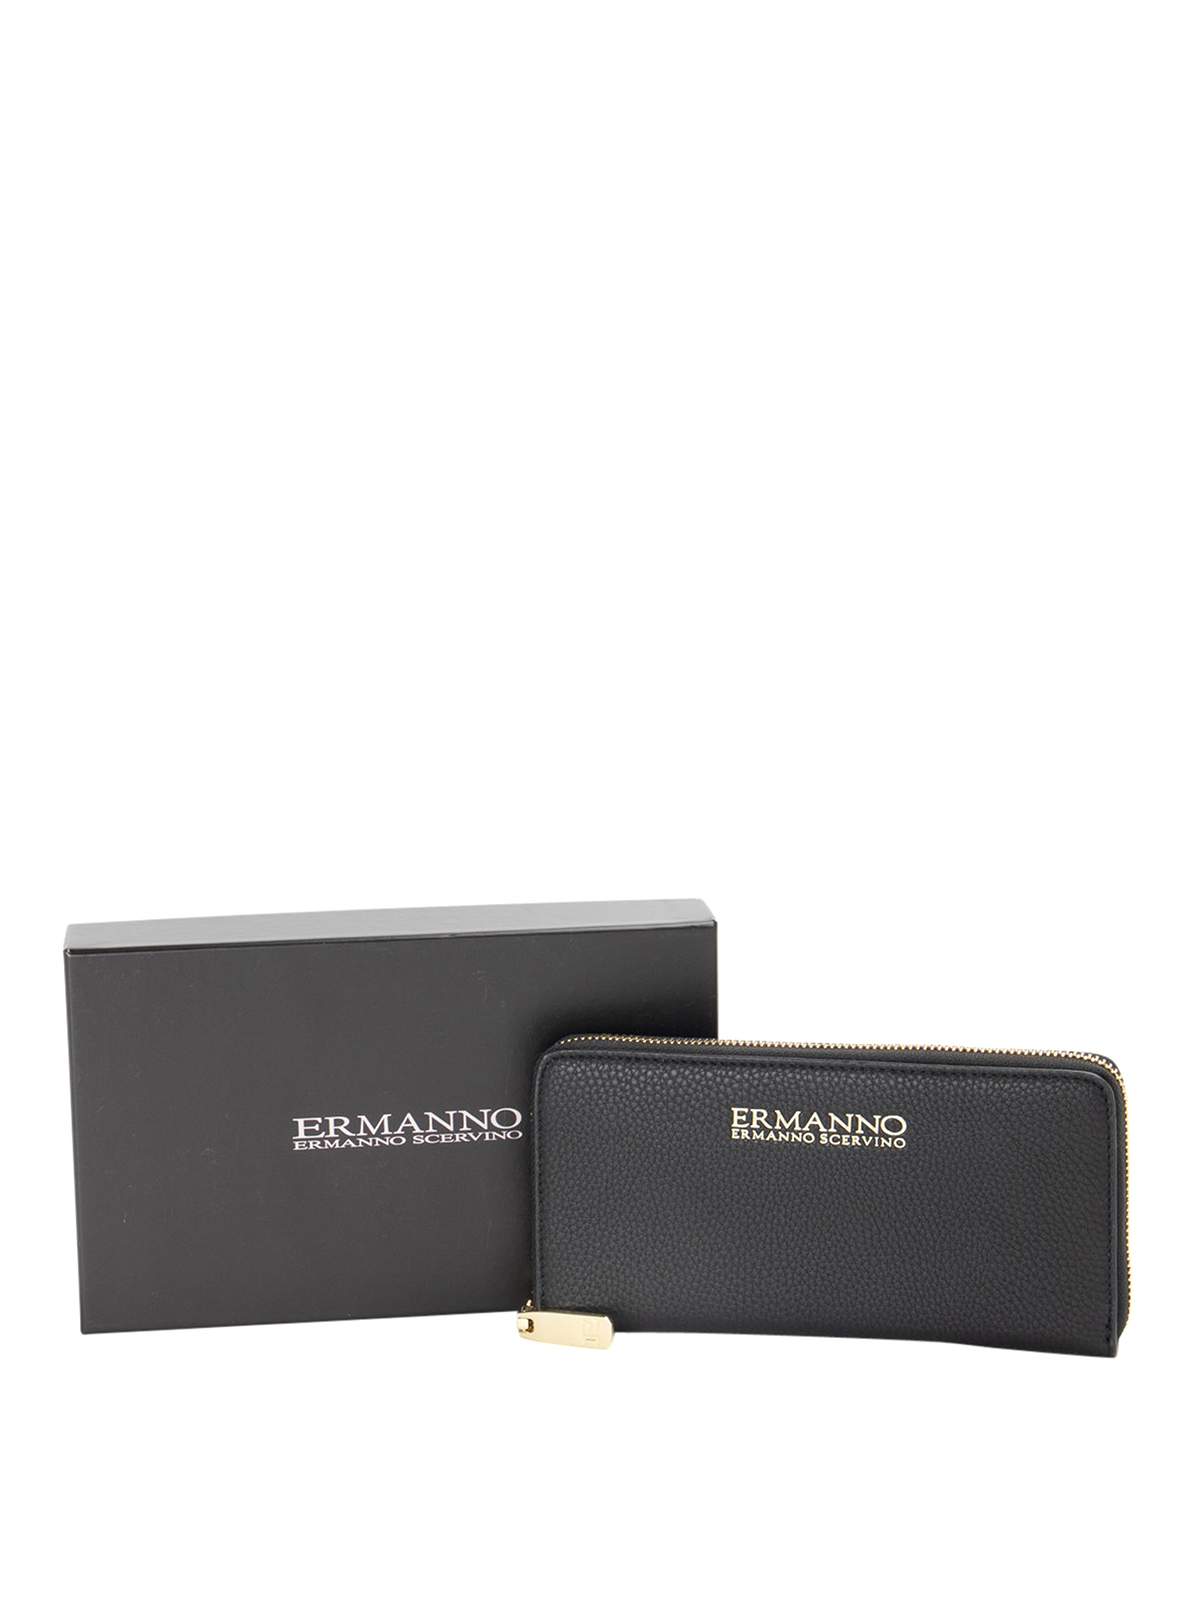 Ermanno By Ermanno Scervino Wallet In Black